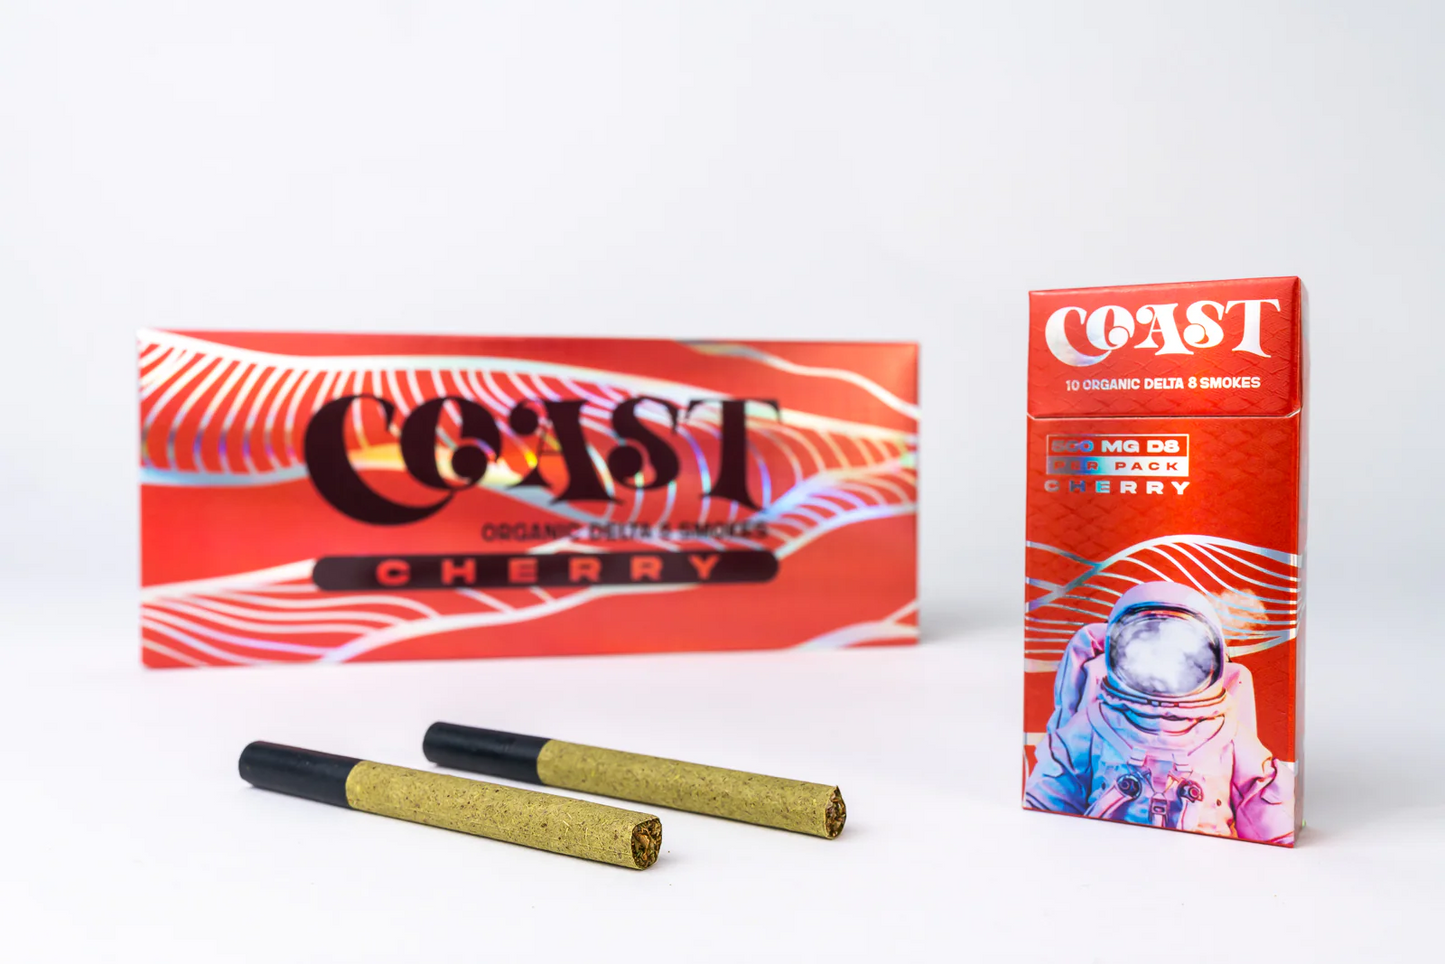 Coast Delta 8 Cigarettes-Cherry